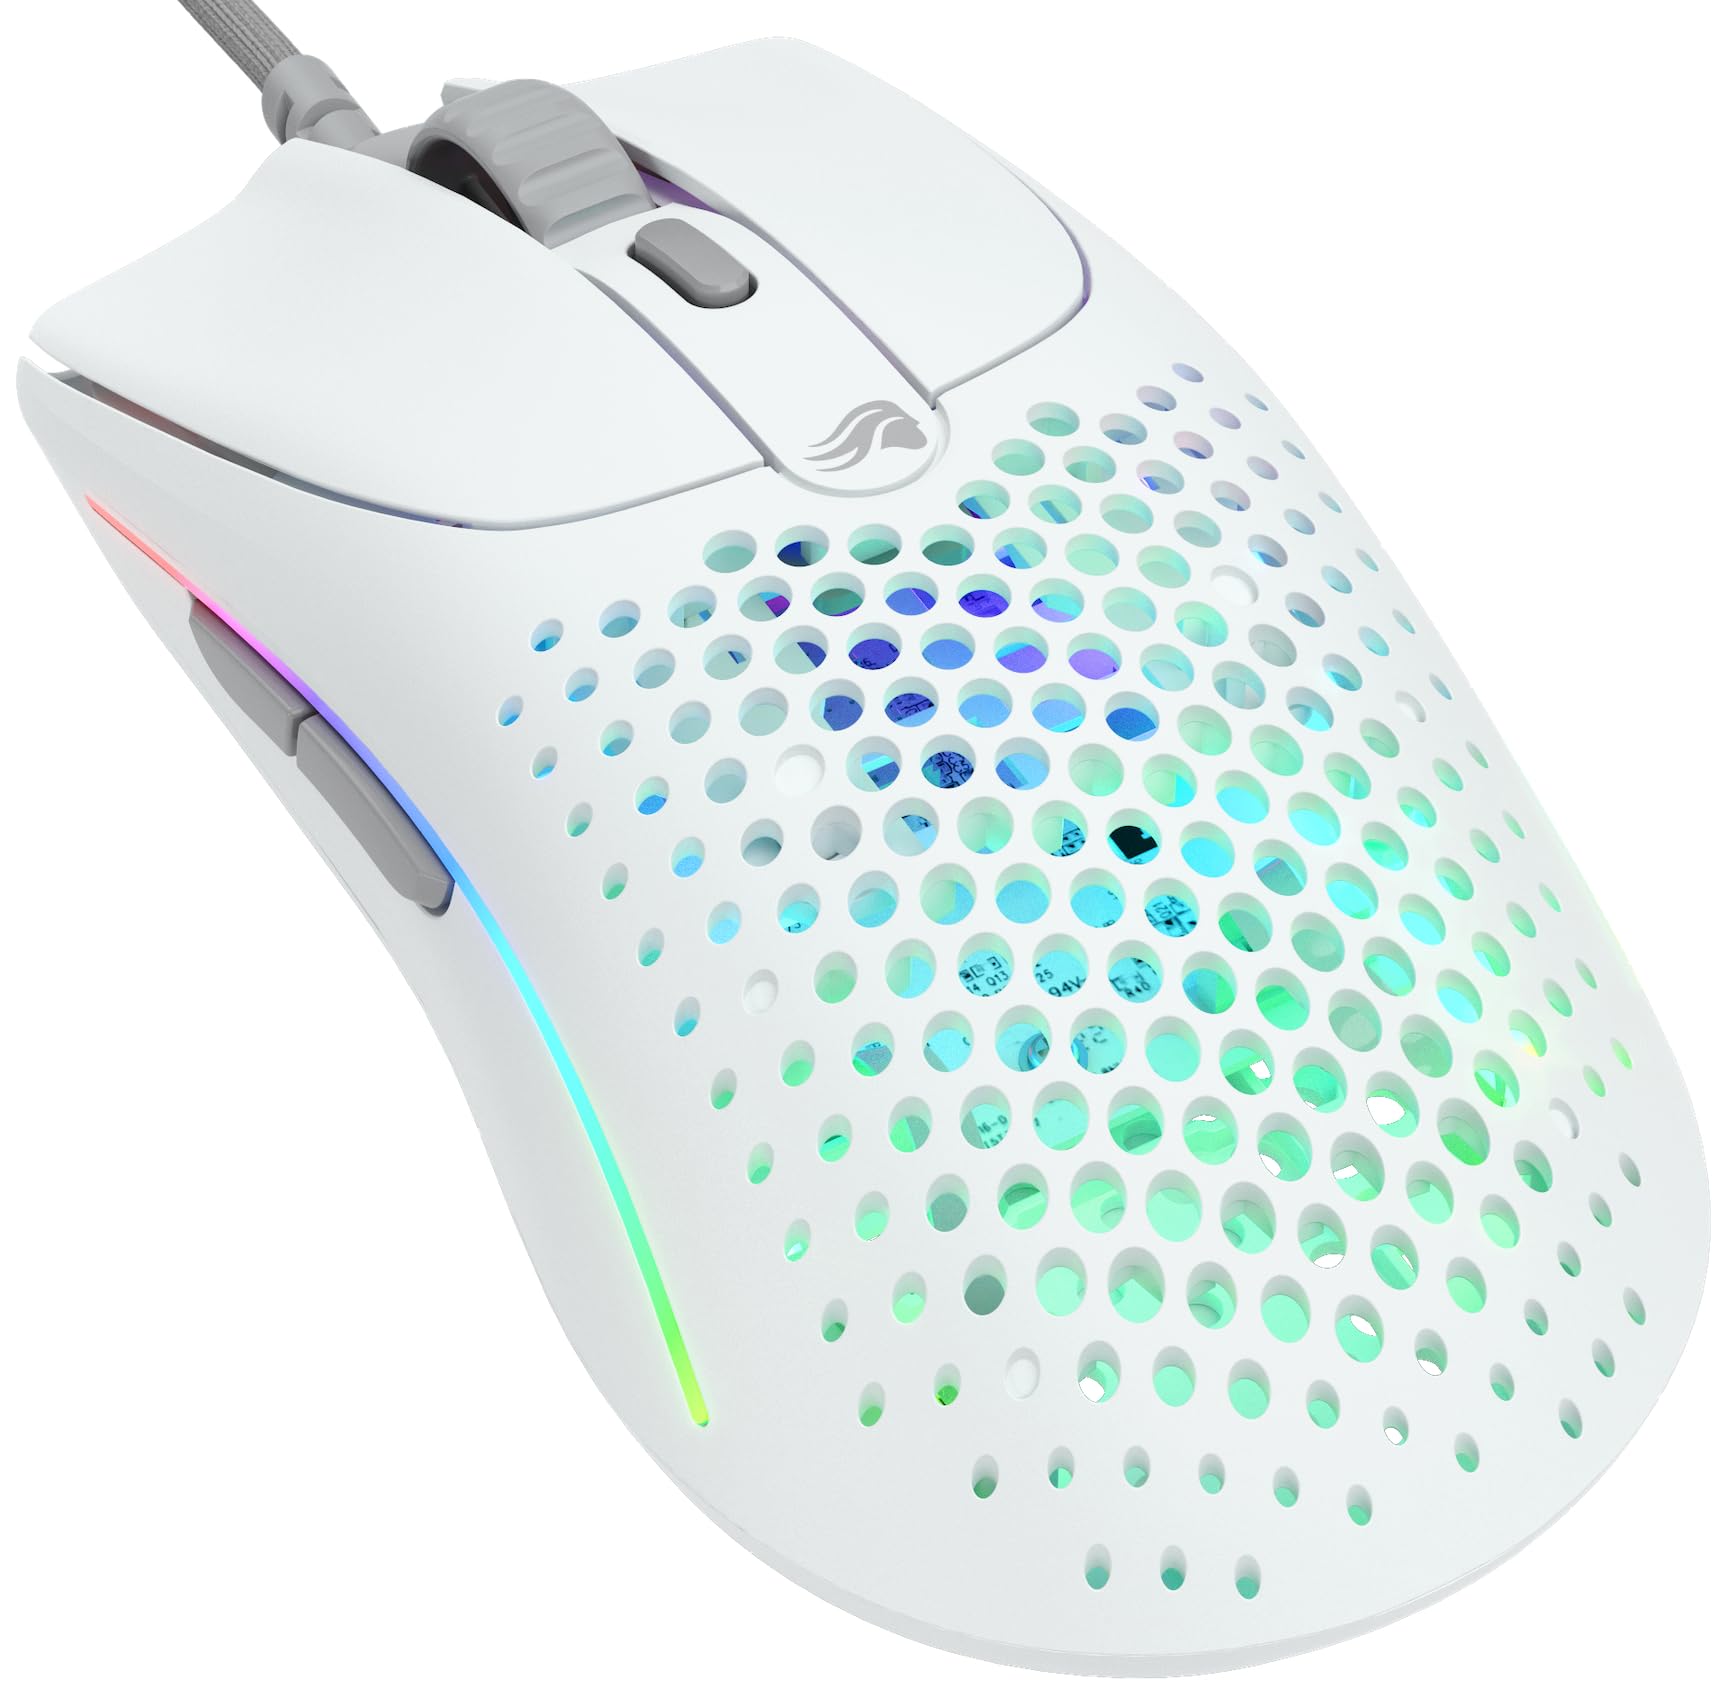 Glorious Gaming Model O 2 Wired Gaming Mouse – ultraleichte 59 g, FPS, 26.000 DPI, Motion-Sync, auf 80 Mio. Klicks ausgelegte Schalter, 6 programmierbare Tasten, beidhändig, RGB, PTFE-Füße – Weiß